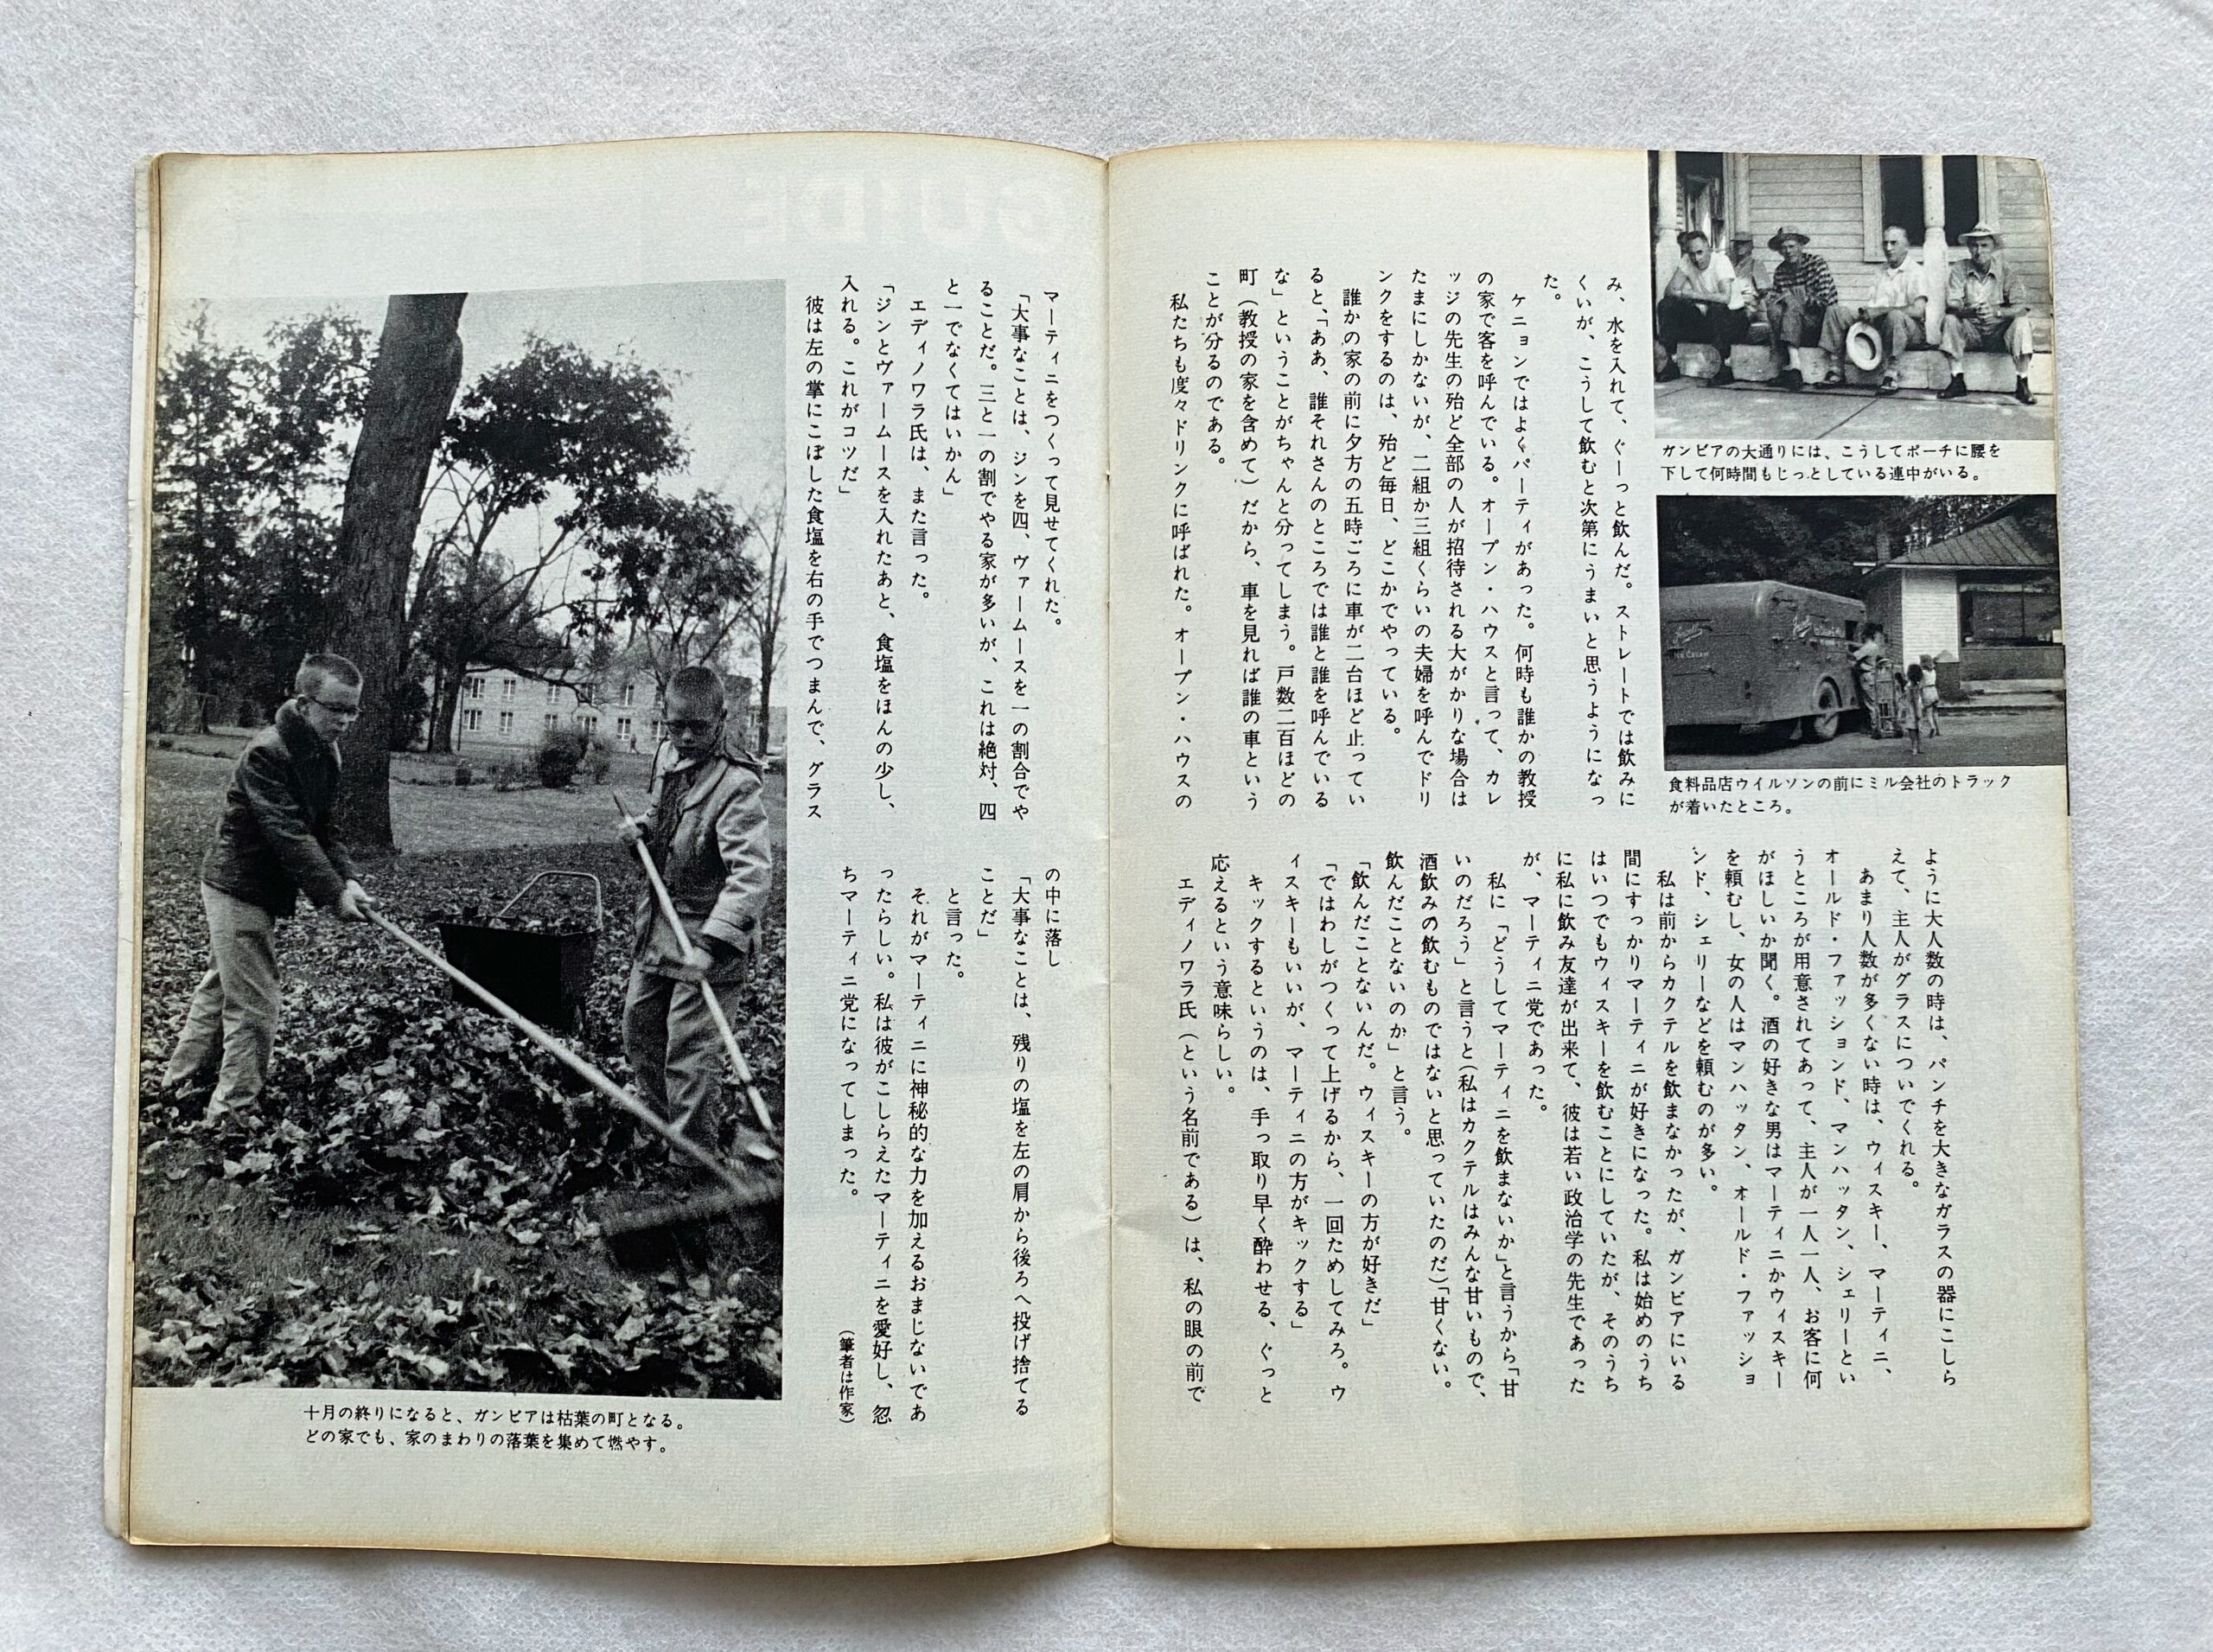 随筆「四対一」には、庄野さんがアメリカで撮影してきた写真も掲載されている